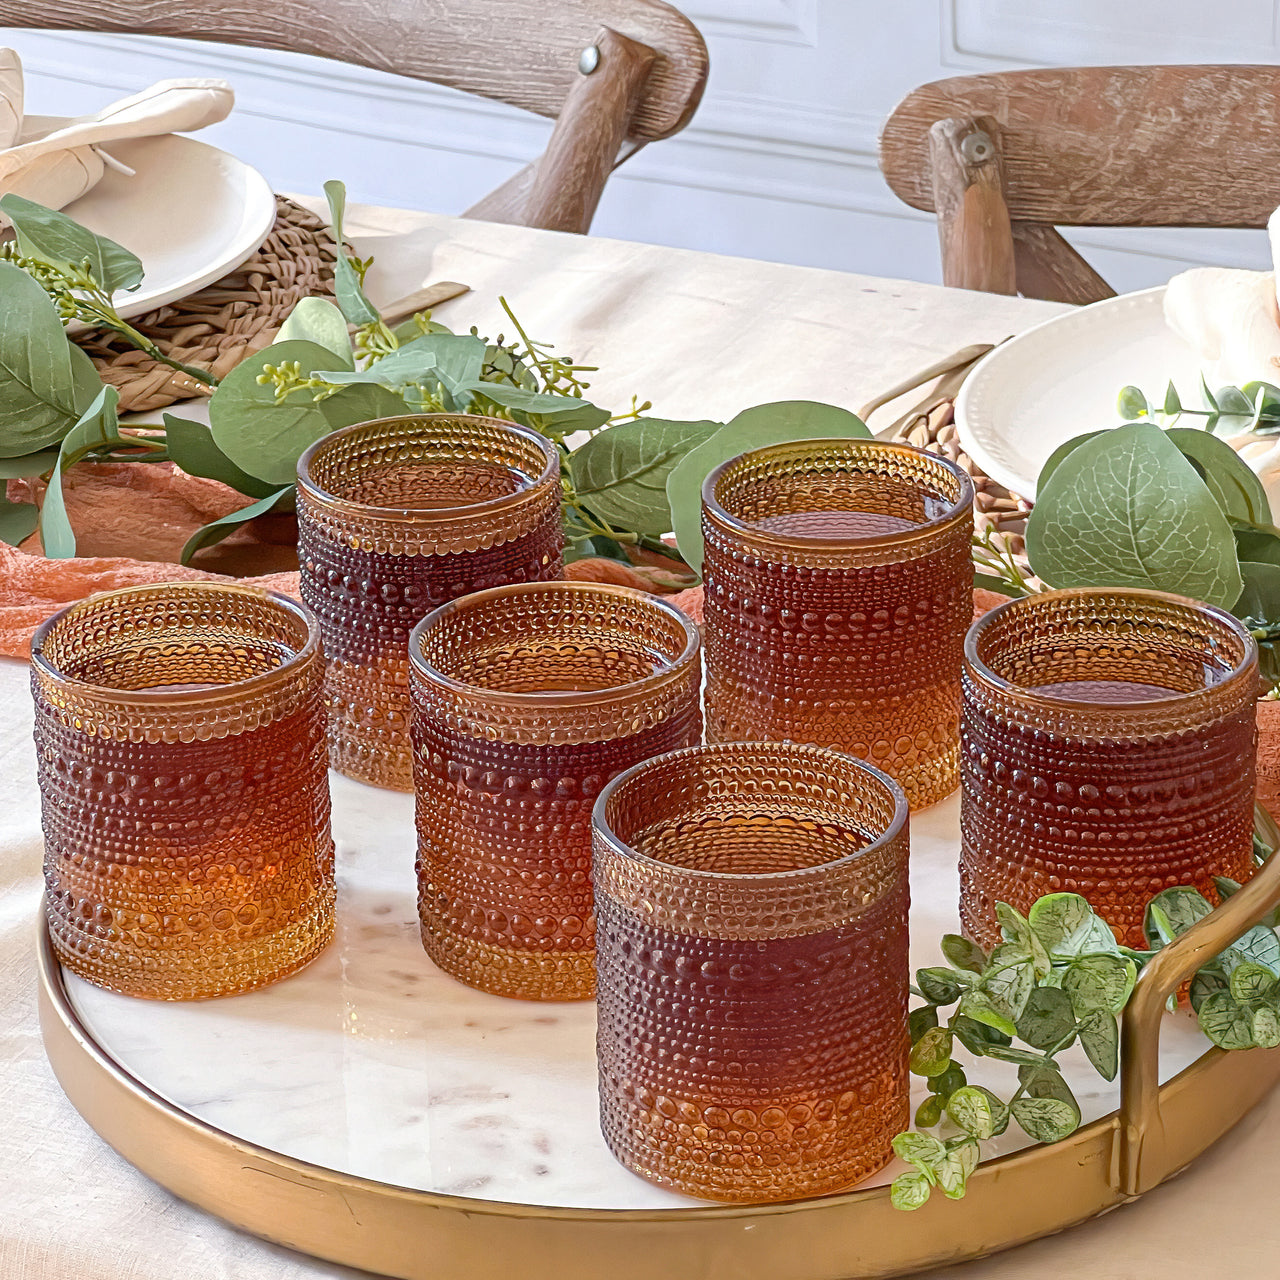 10 oz. Textured Beaded Amber Glass (Set of 6) Alternate Image 3, Kate Aspen | Drinking Glasses